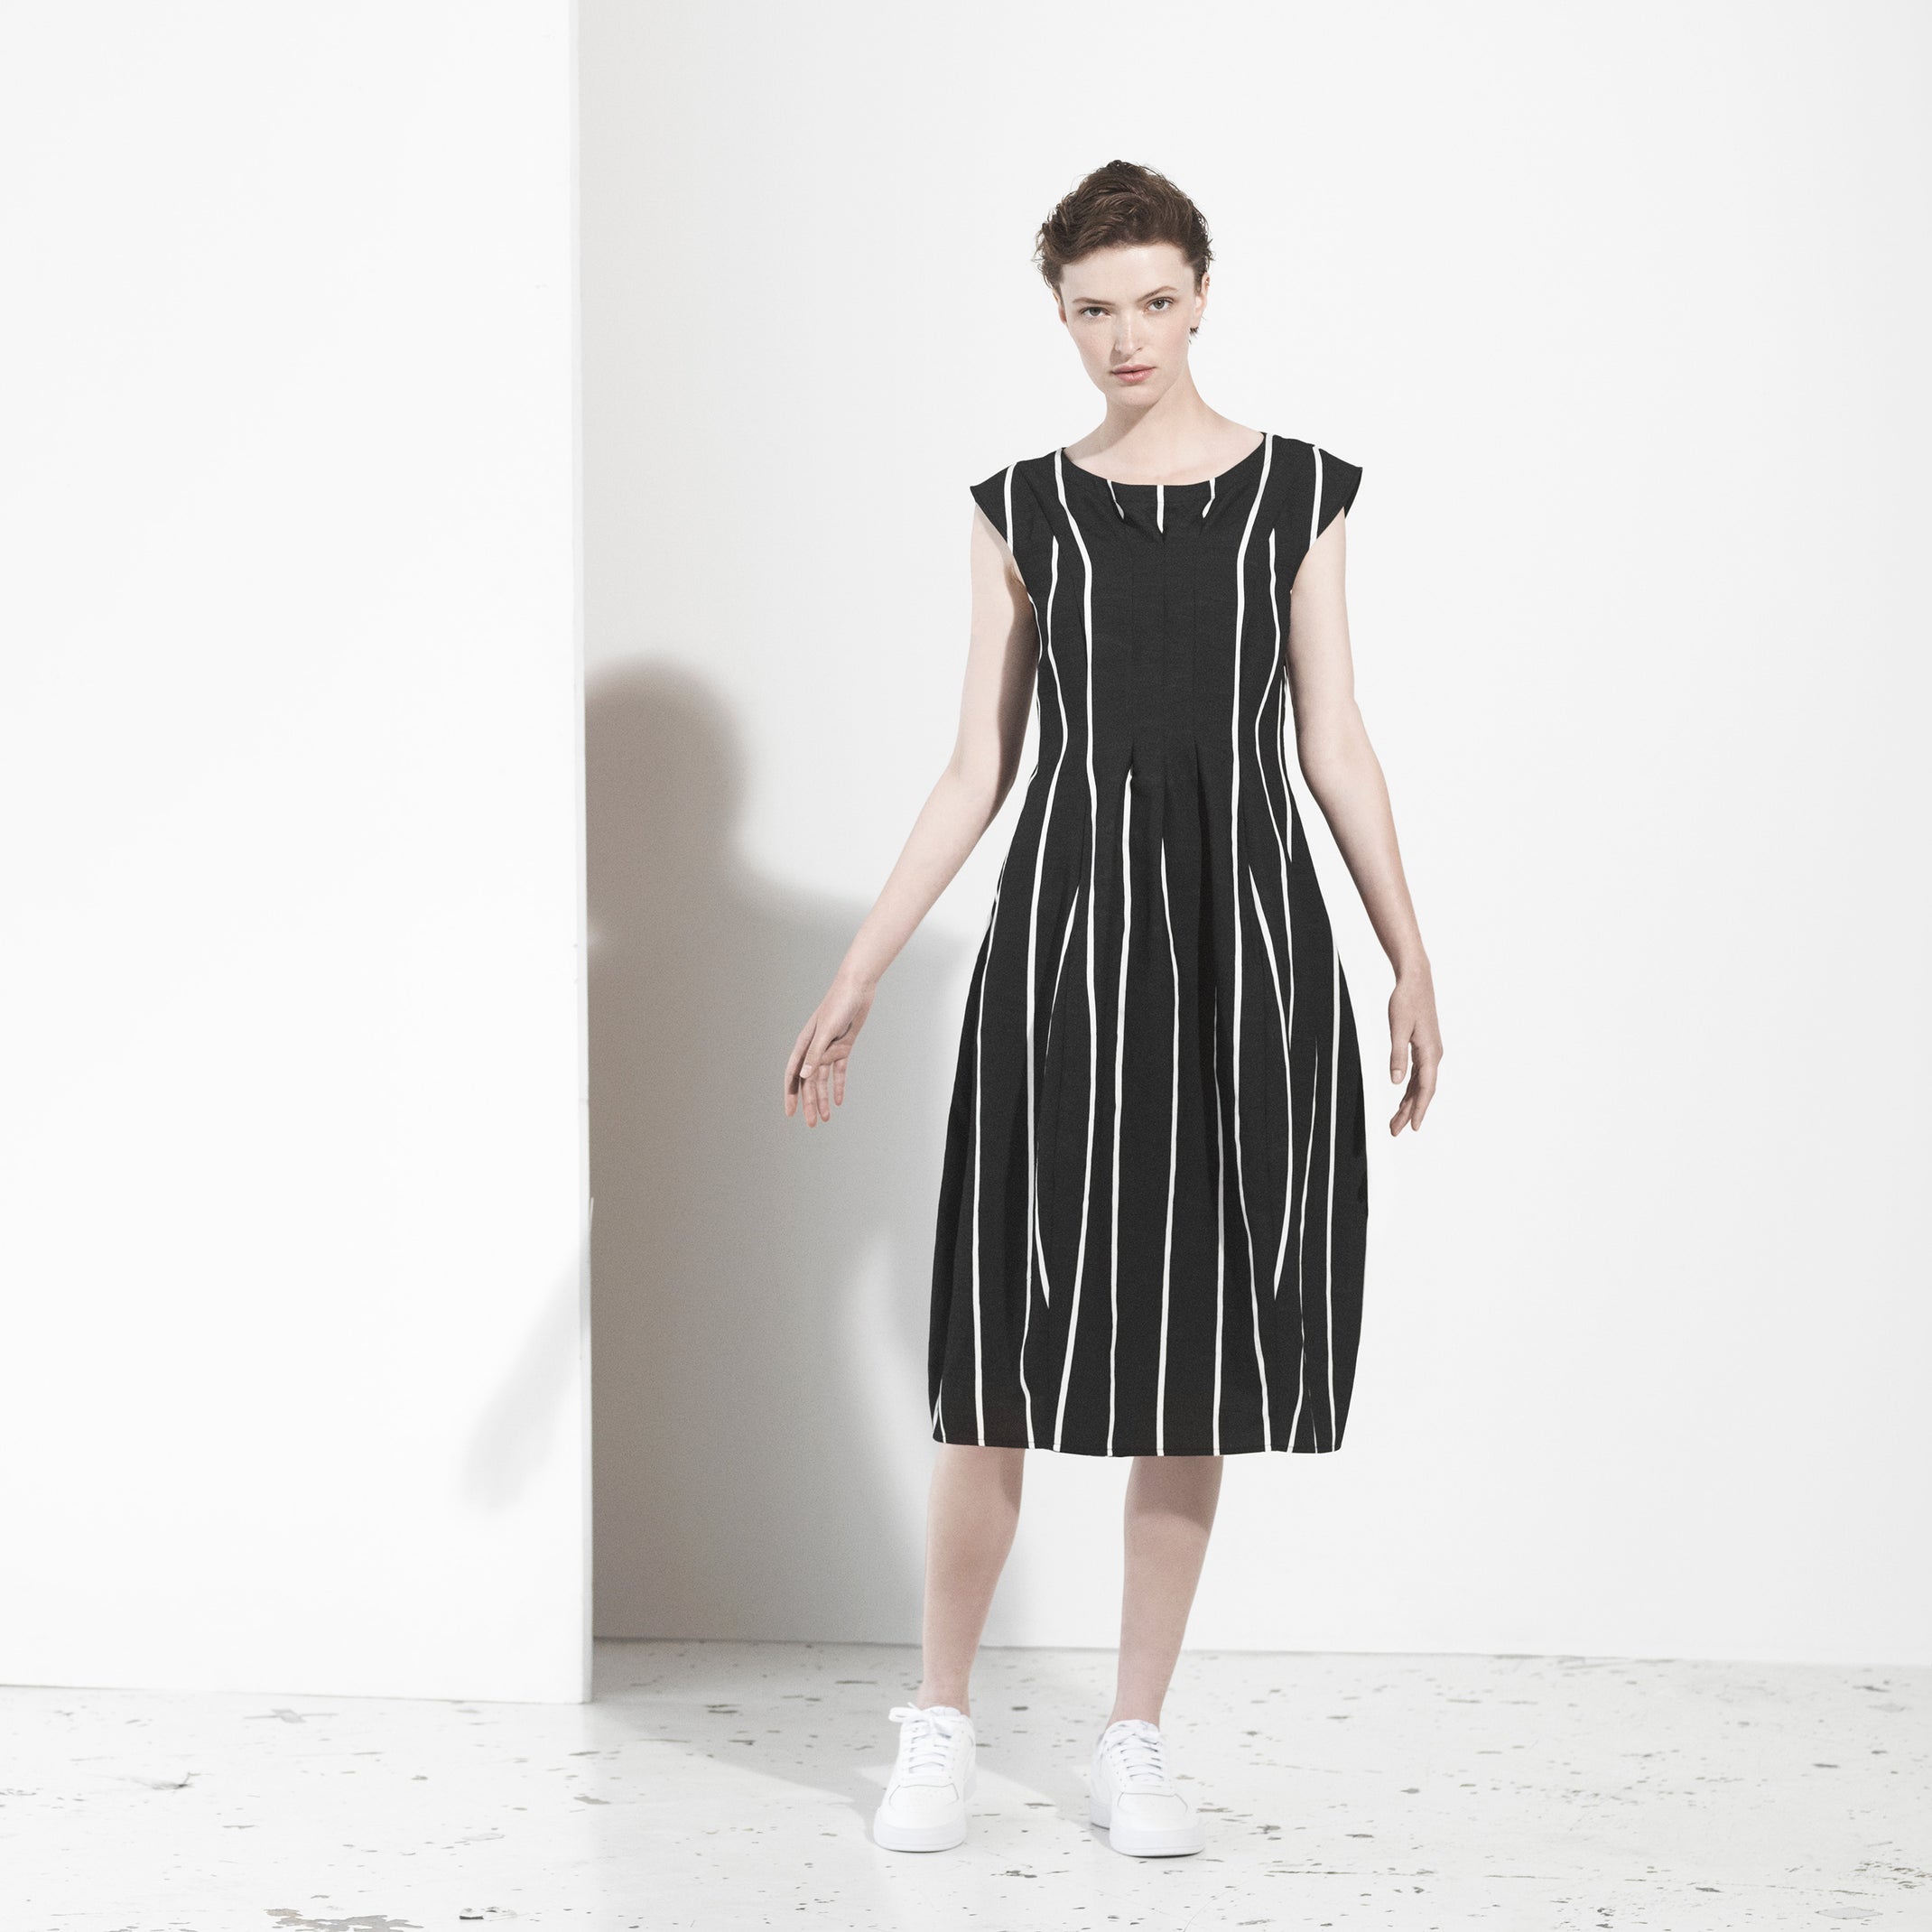 Trine Kryger Simonsen - New Nordic Design - Clothing Brand